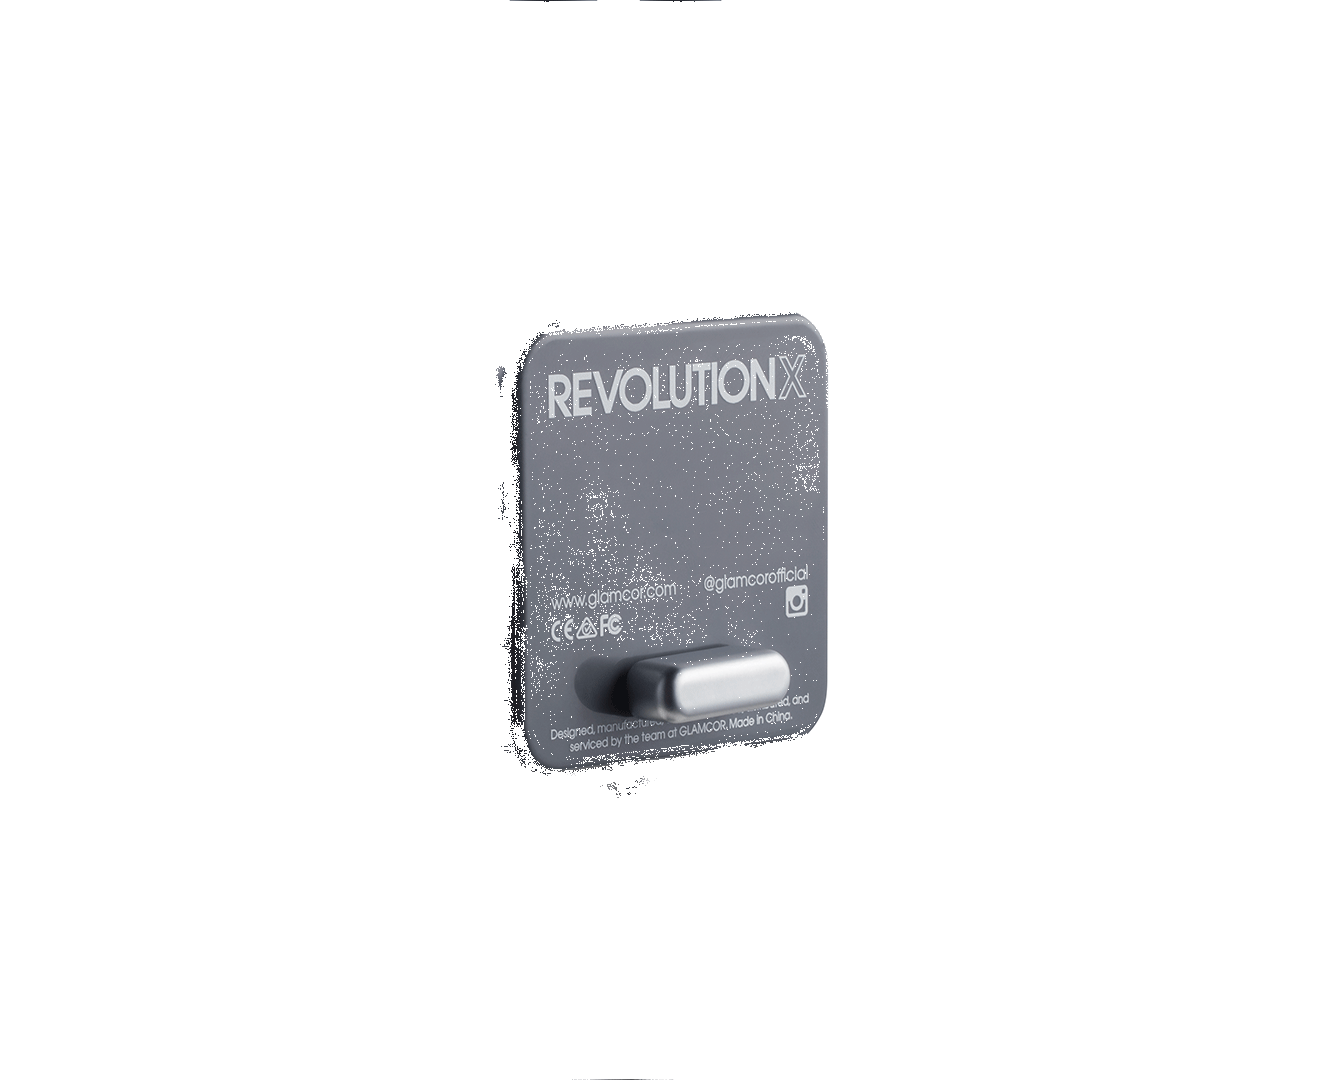 Glamcor Revolution X Deluxe Sparkle Edition | Flexible Led Lighting